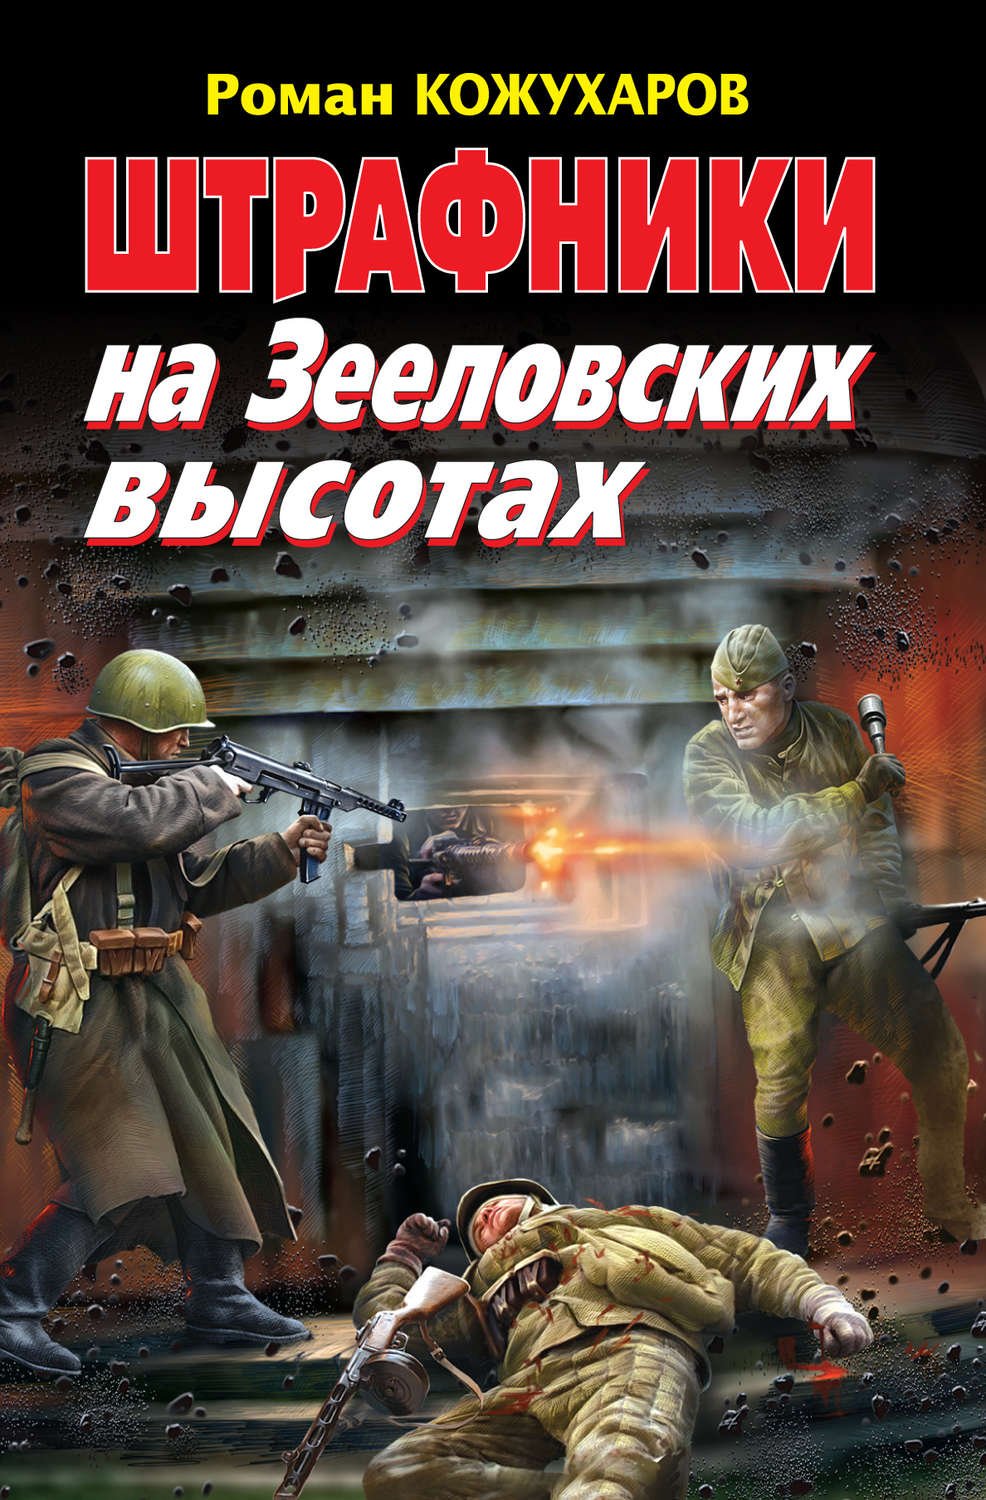 Книги о разведчиках Великой Отечественной